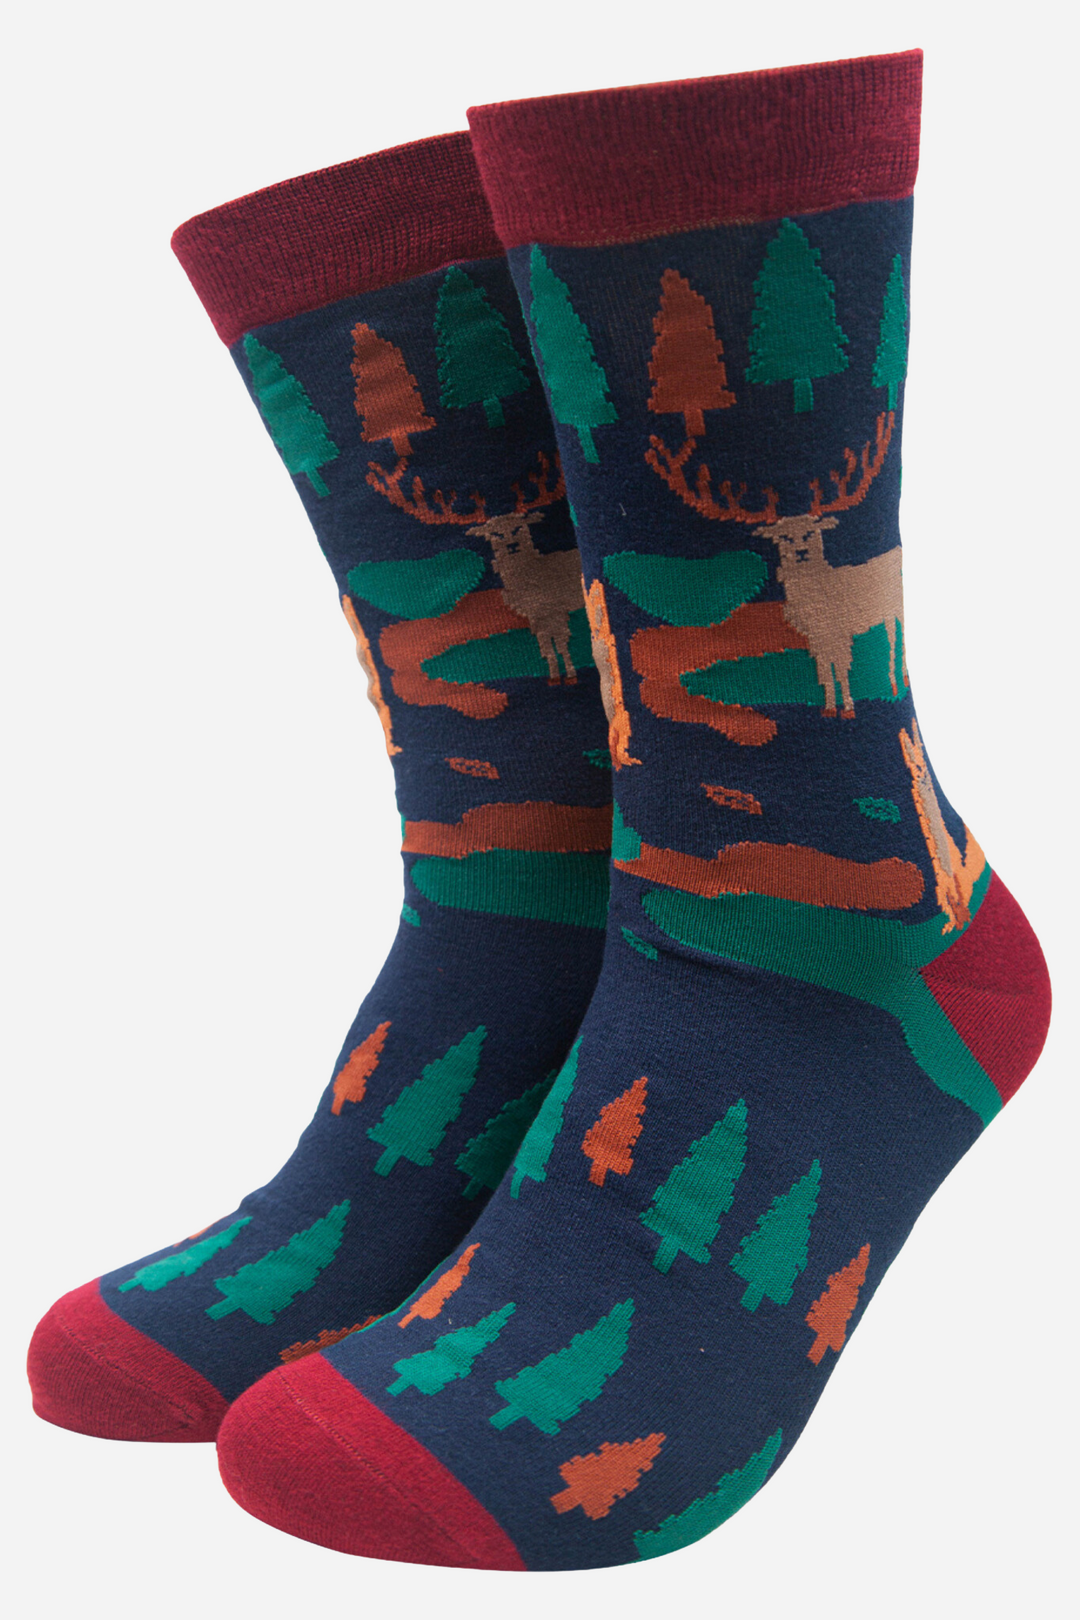 Men's Bamboo Socks Woodland Animal Novelty Socks Gift Set